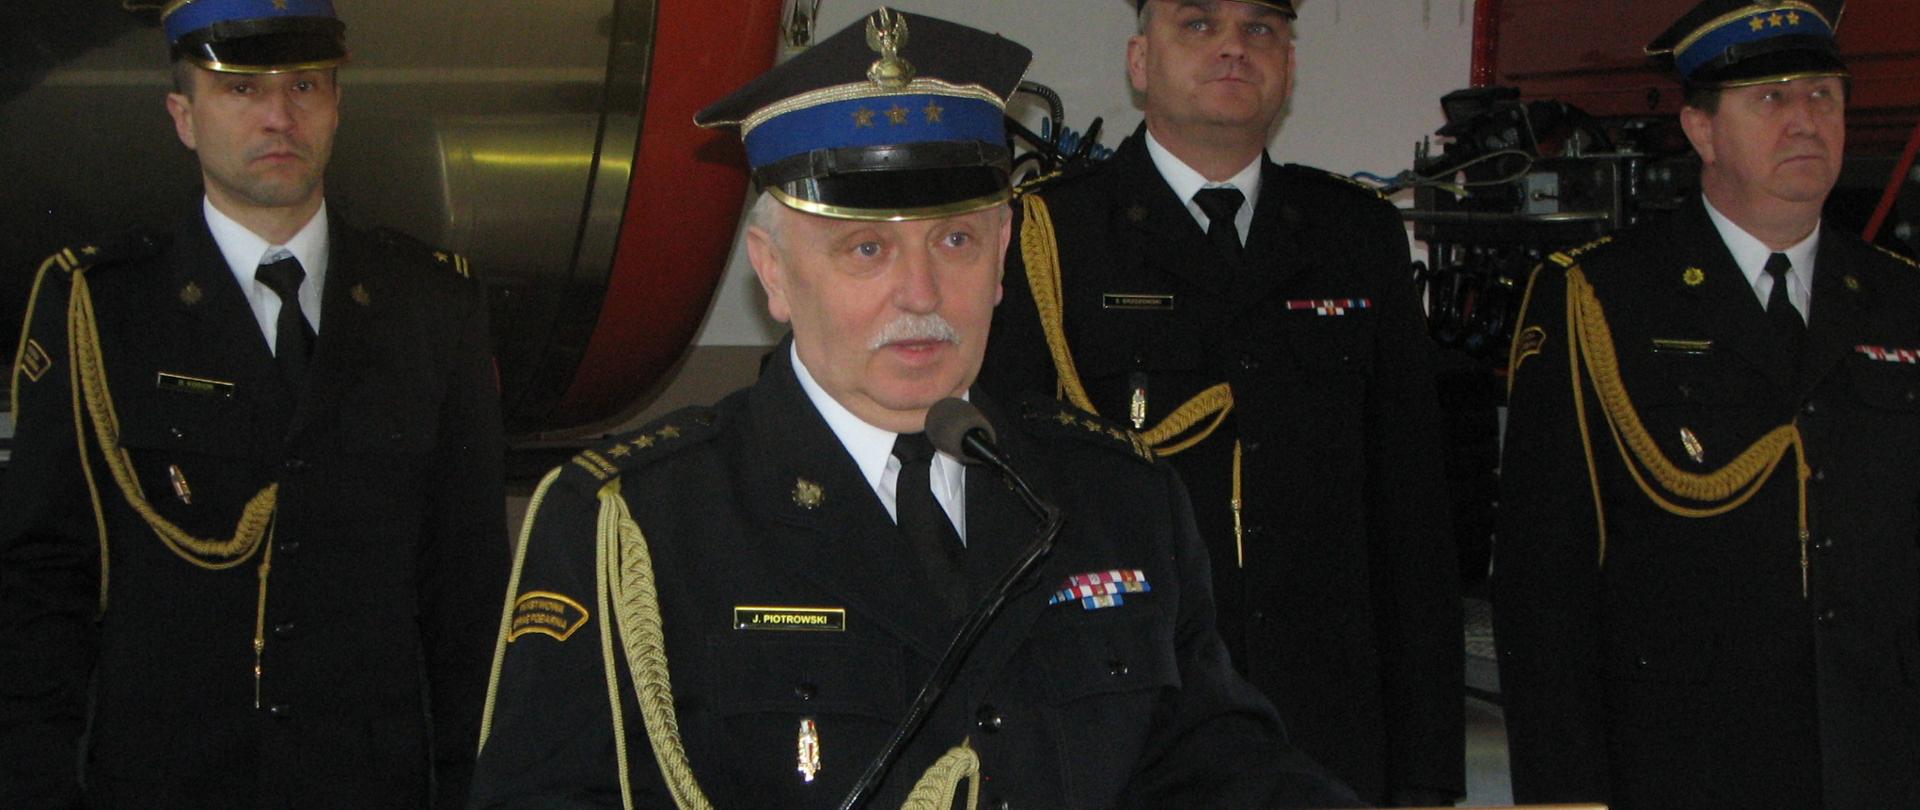 Na zdjęciu widoczny jest Mazowiecki Komendant Wojewódzki st. bryg. Jarosław Piotrowski.